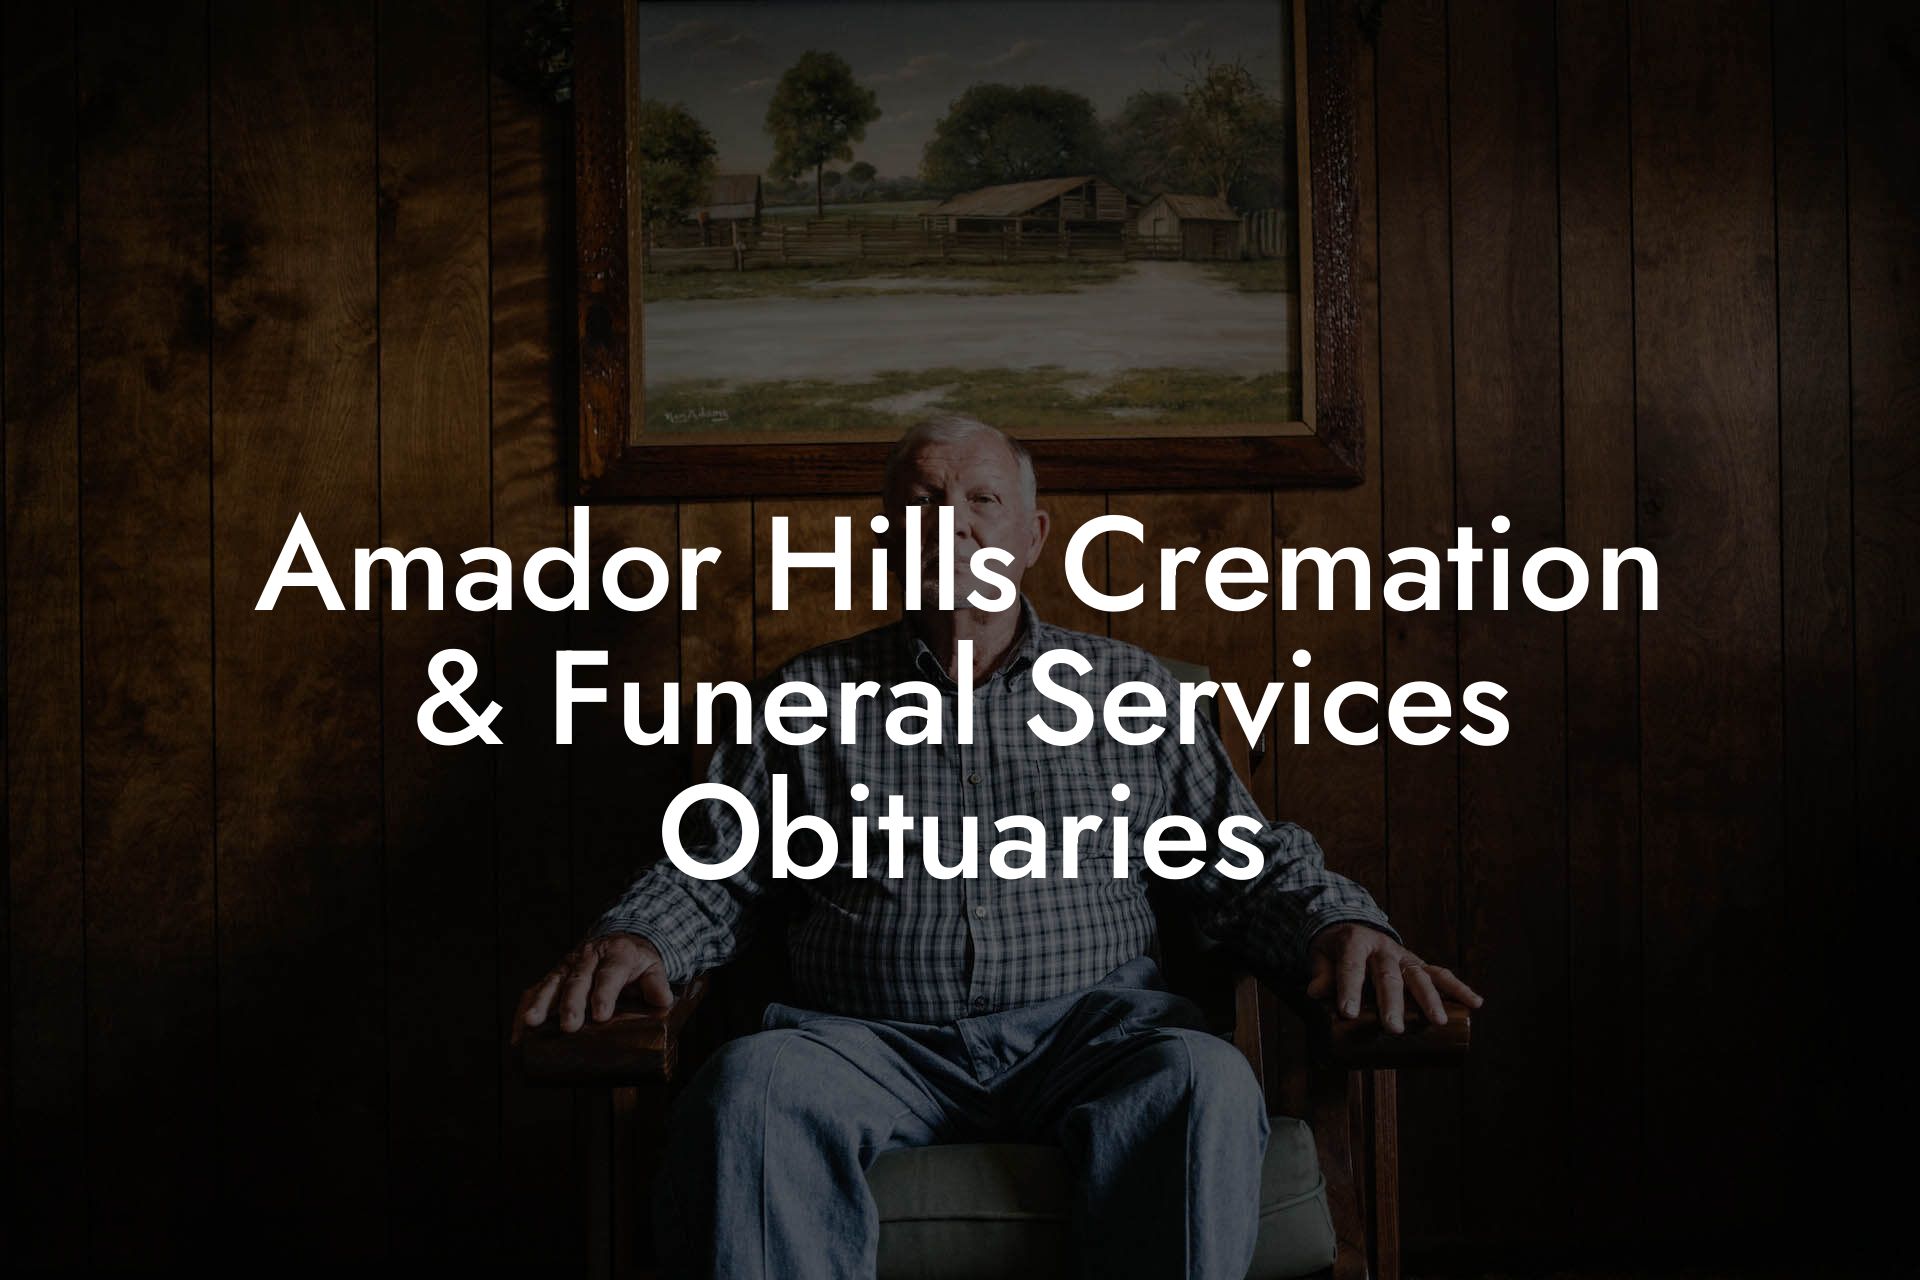 Amador Hills Cremation & Funeral Services Obituaries